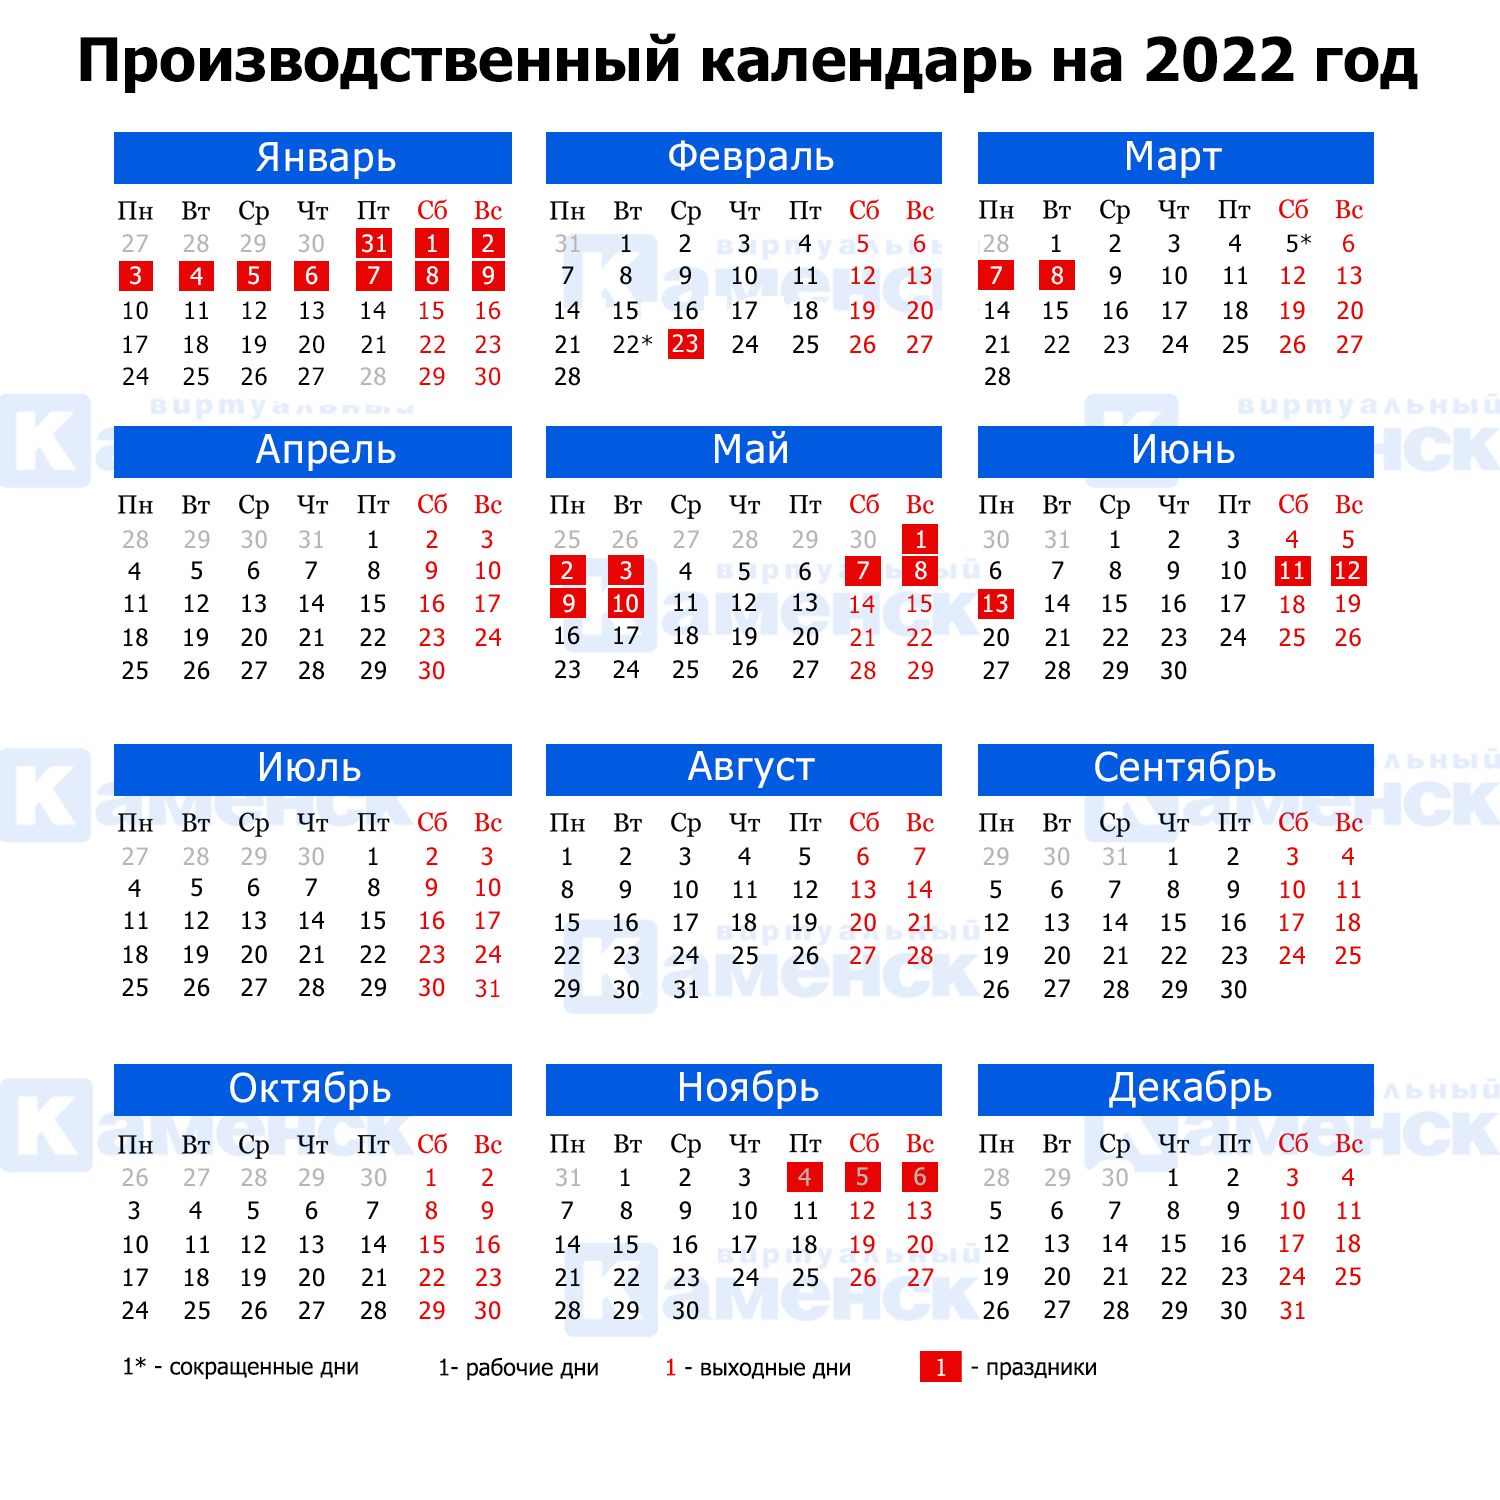 Какие праздники 2022 году. Производственный календарь 2022 Башкортостан. Производственный календарь на 2022 год. Производственный календарь на 2022 горд. Проихвосдтвенныйткалендарь 2022.